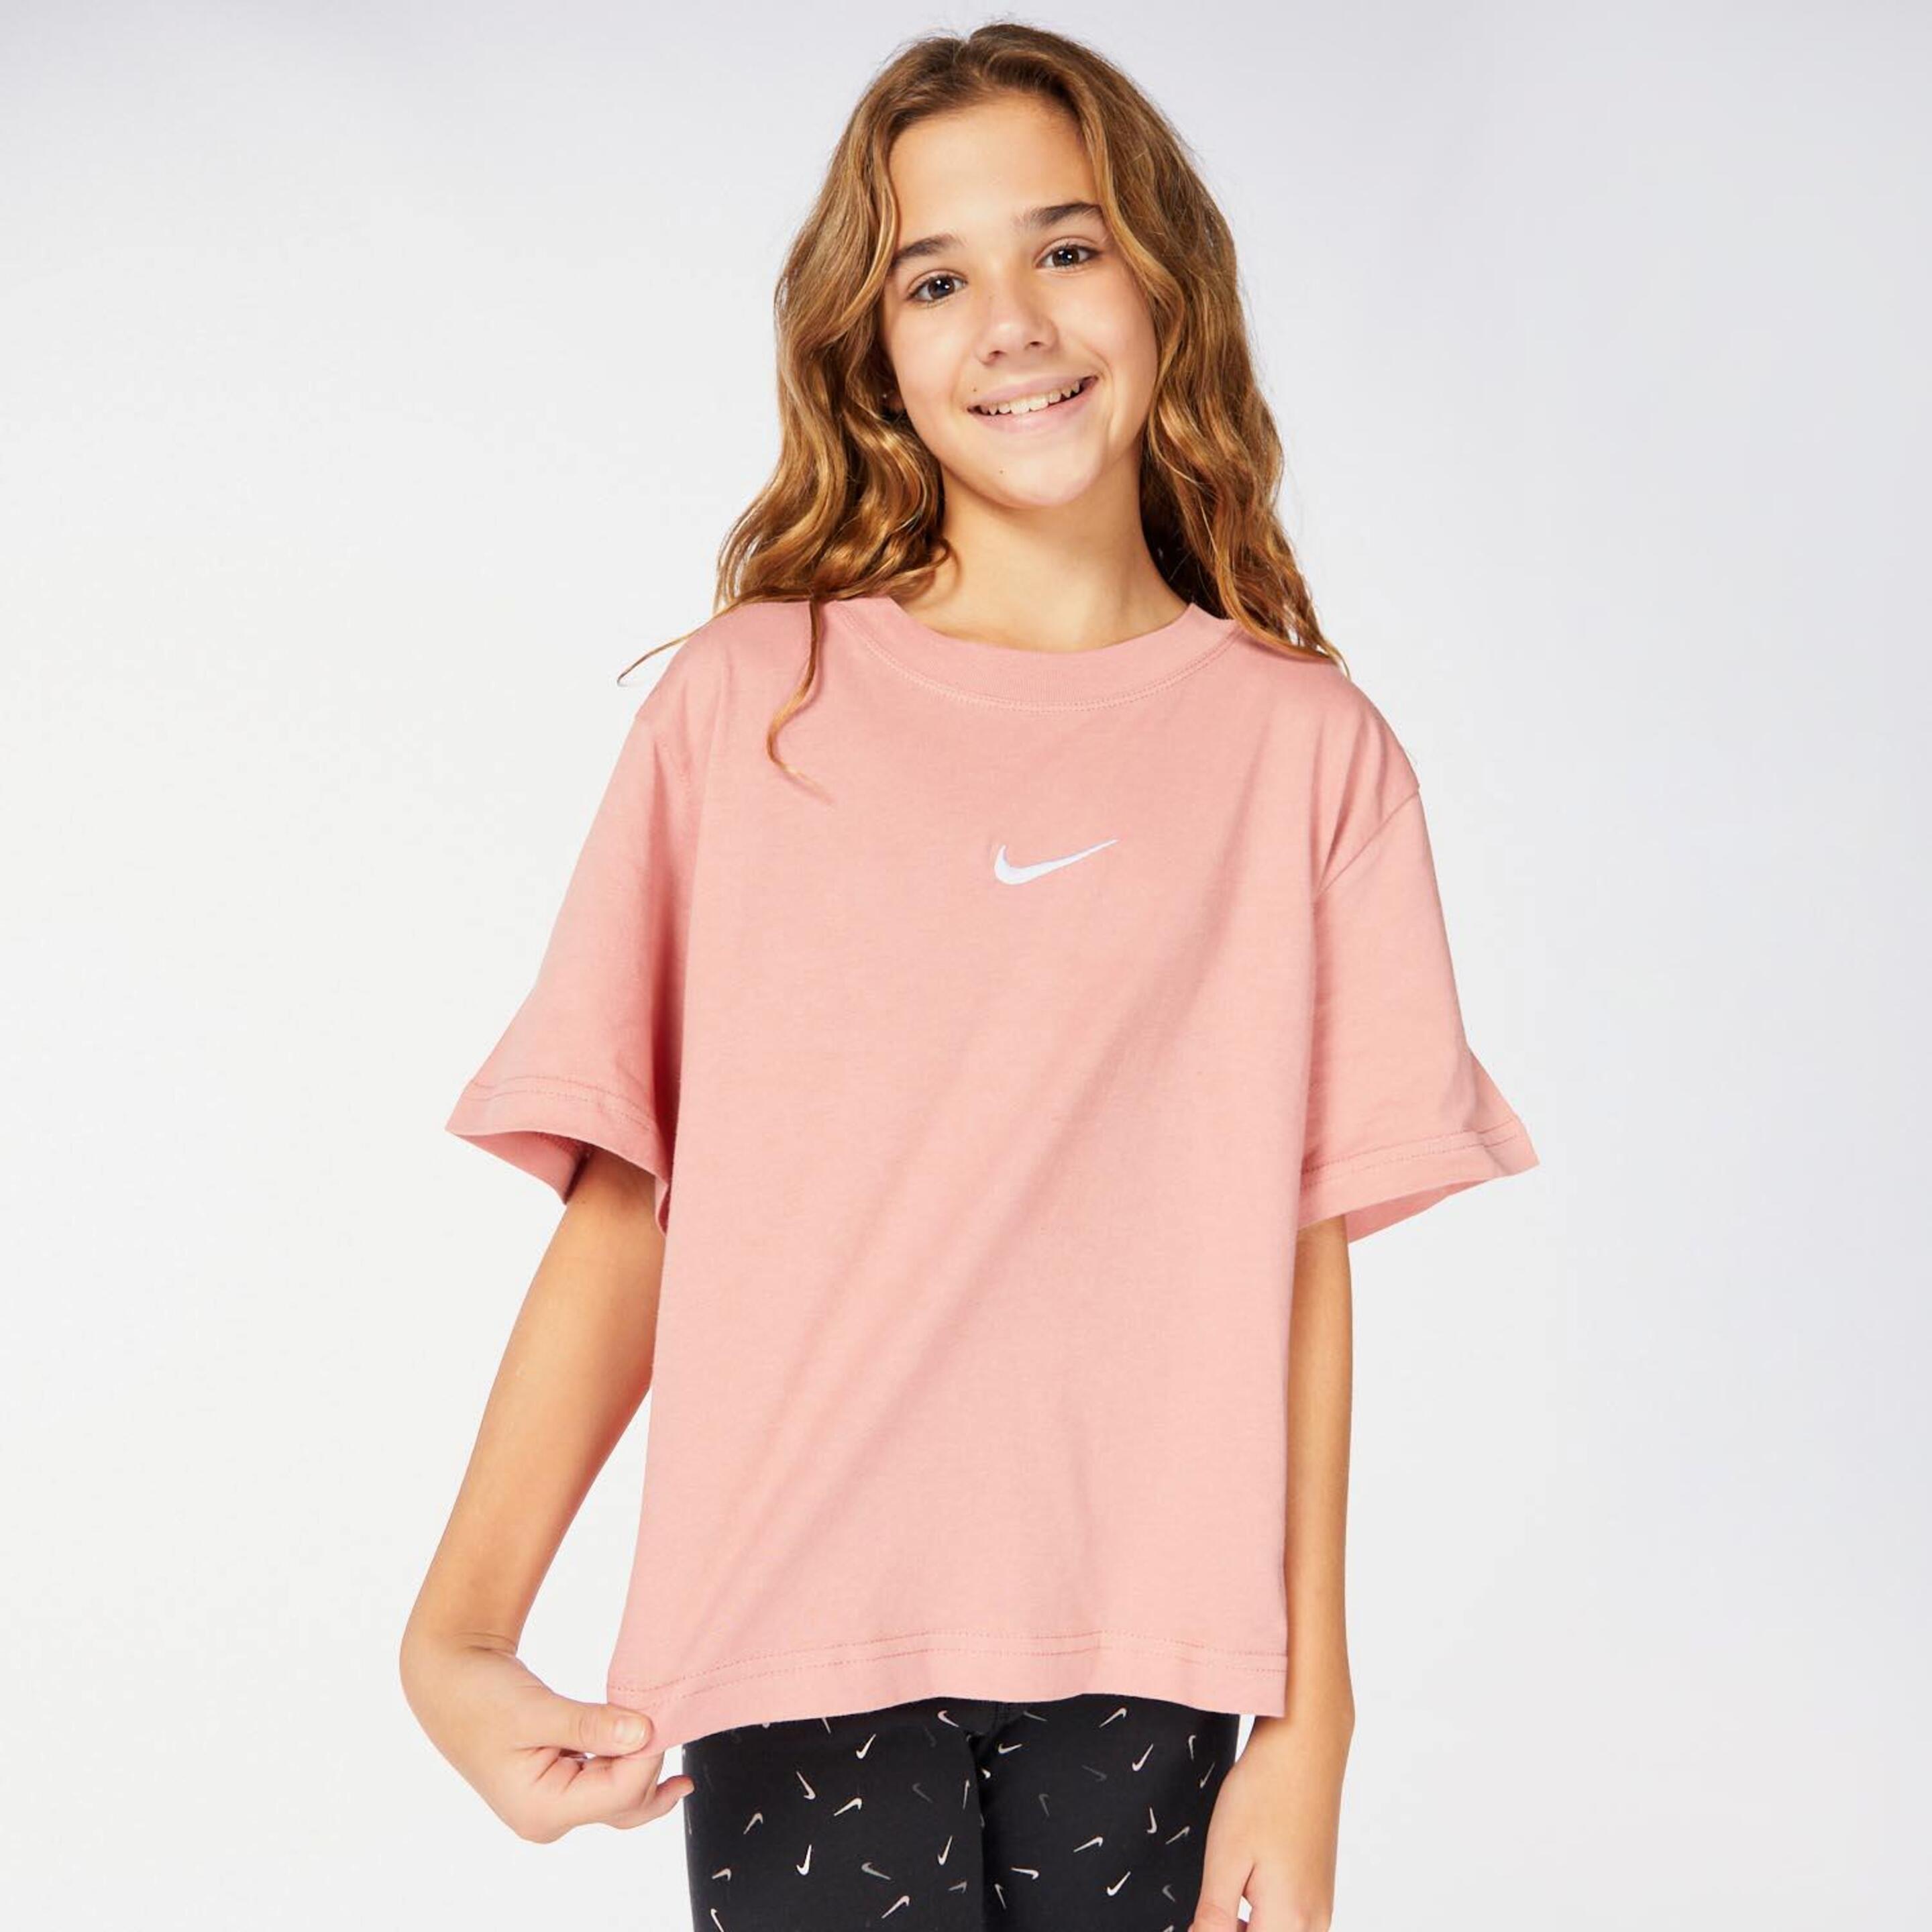 T-shirt Nike - rosa - T-shirt Rapariga